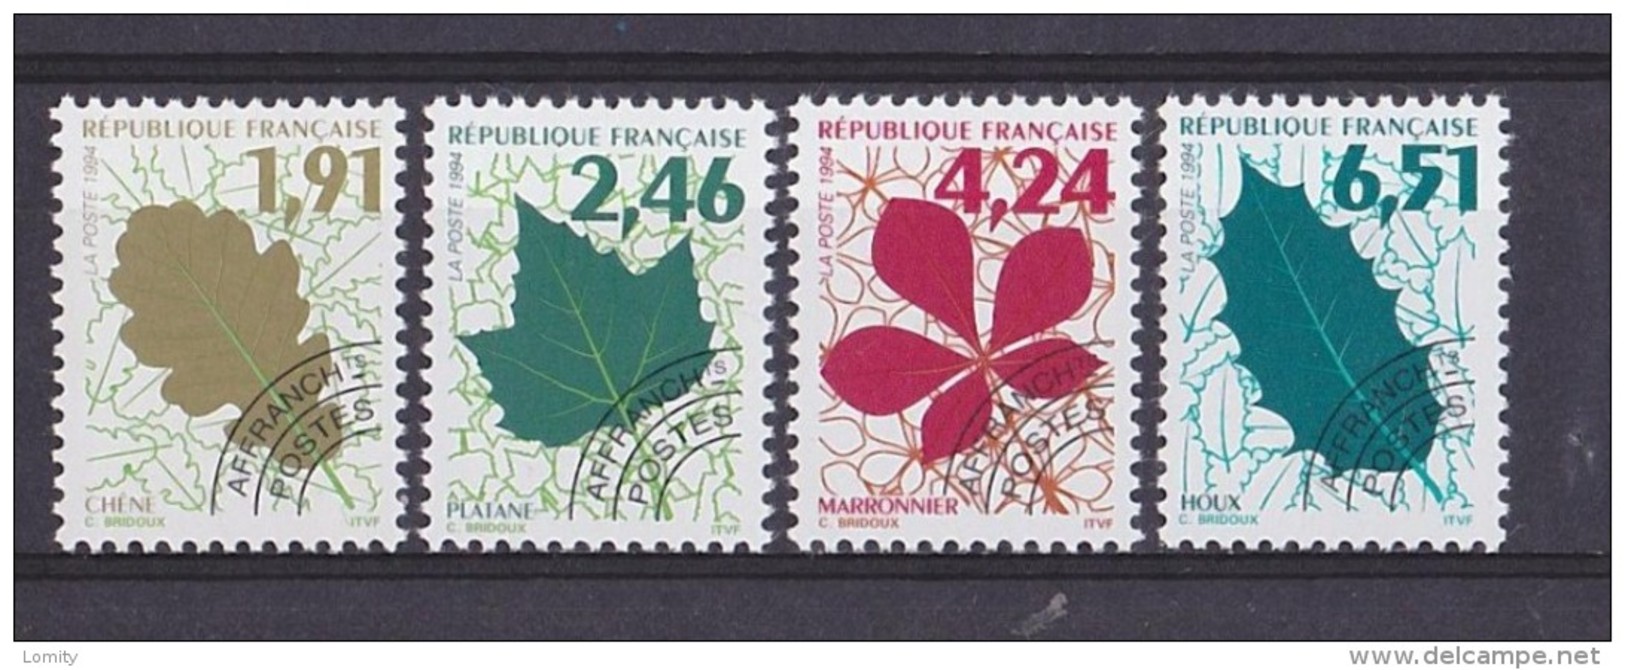 France Preo Preoblitété 1994 Serie Complète Neuve **  N° 232 à 235 Cote 8€ - 1989-2008